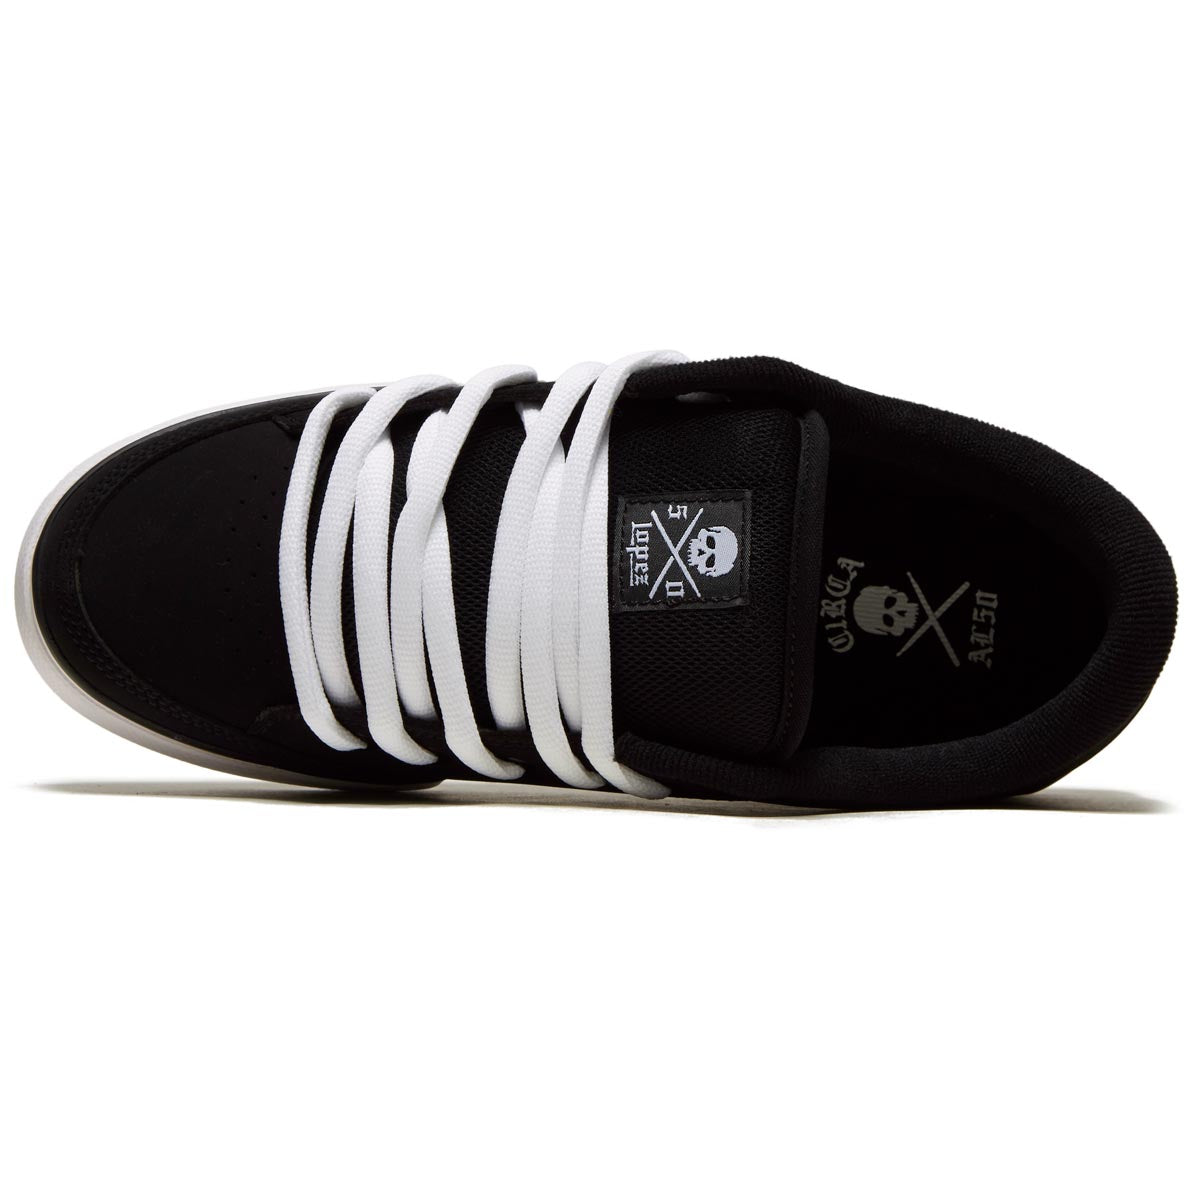 C1rca AL 50 Shoes - Black/White – CCS